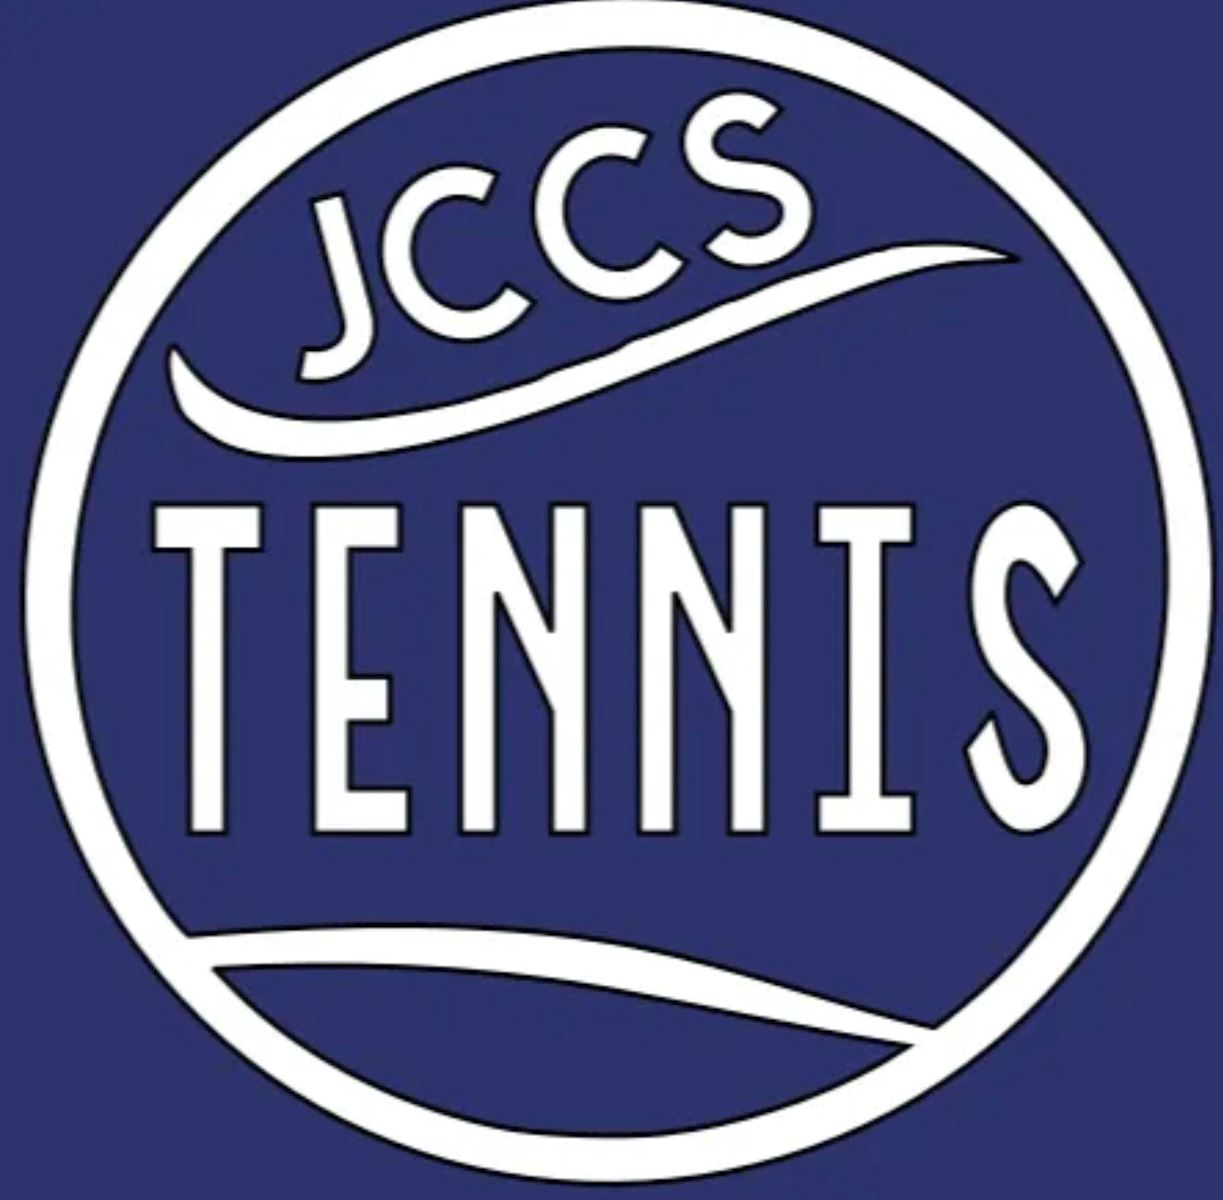 JCCS Tennis